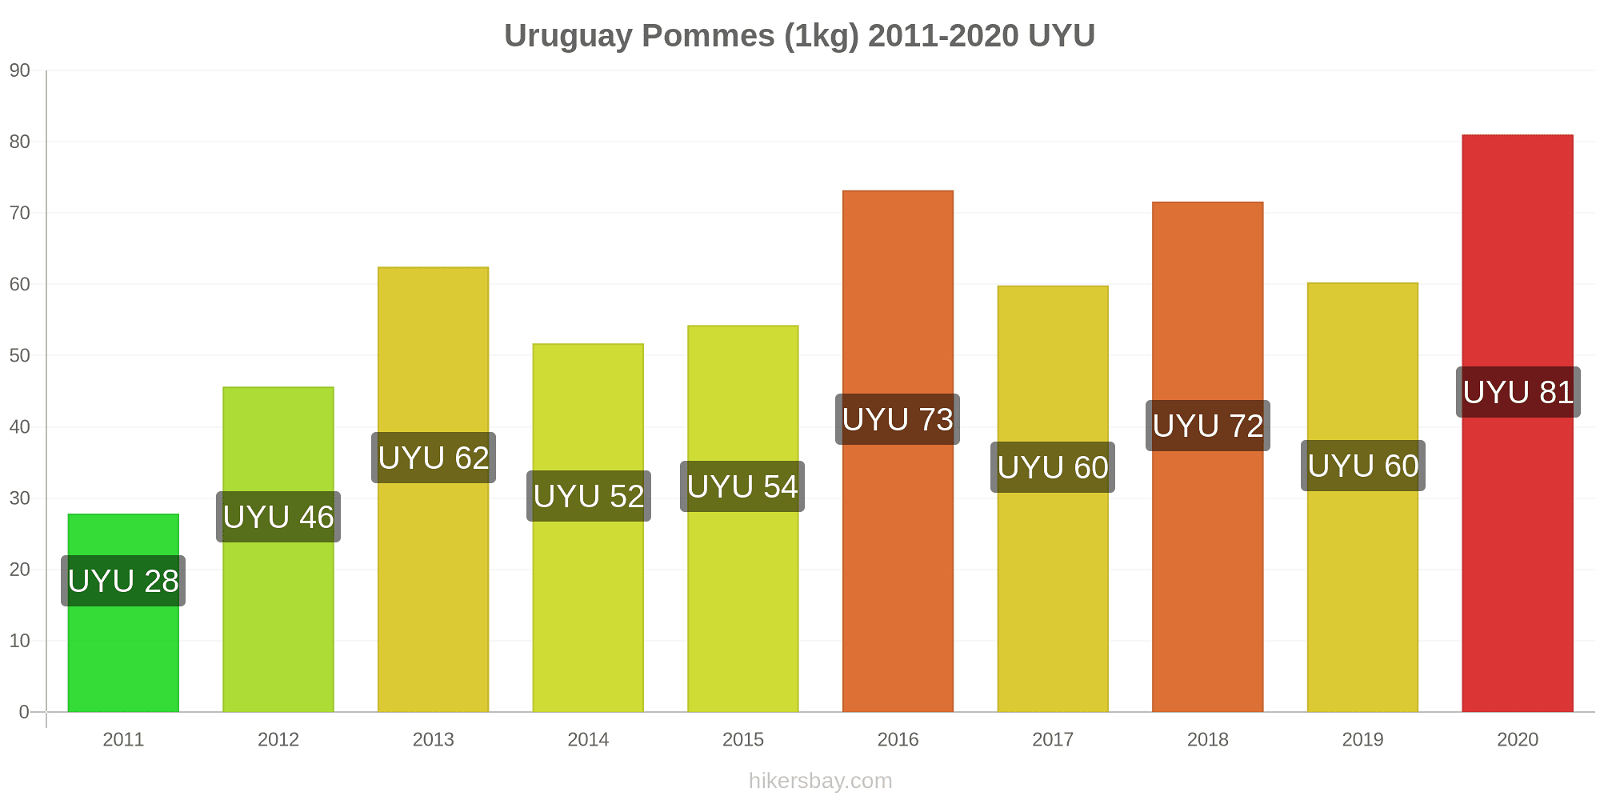 Uruguay changements de prix Pommes (1kg) hikersbay.com